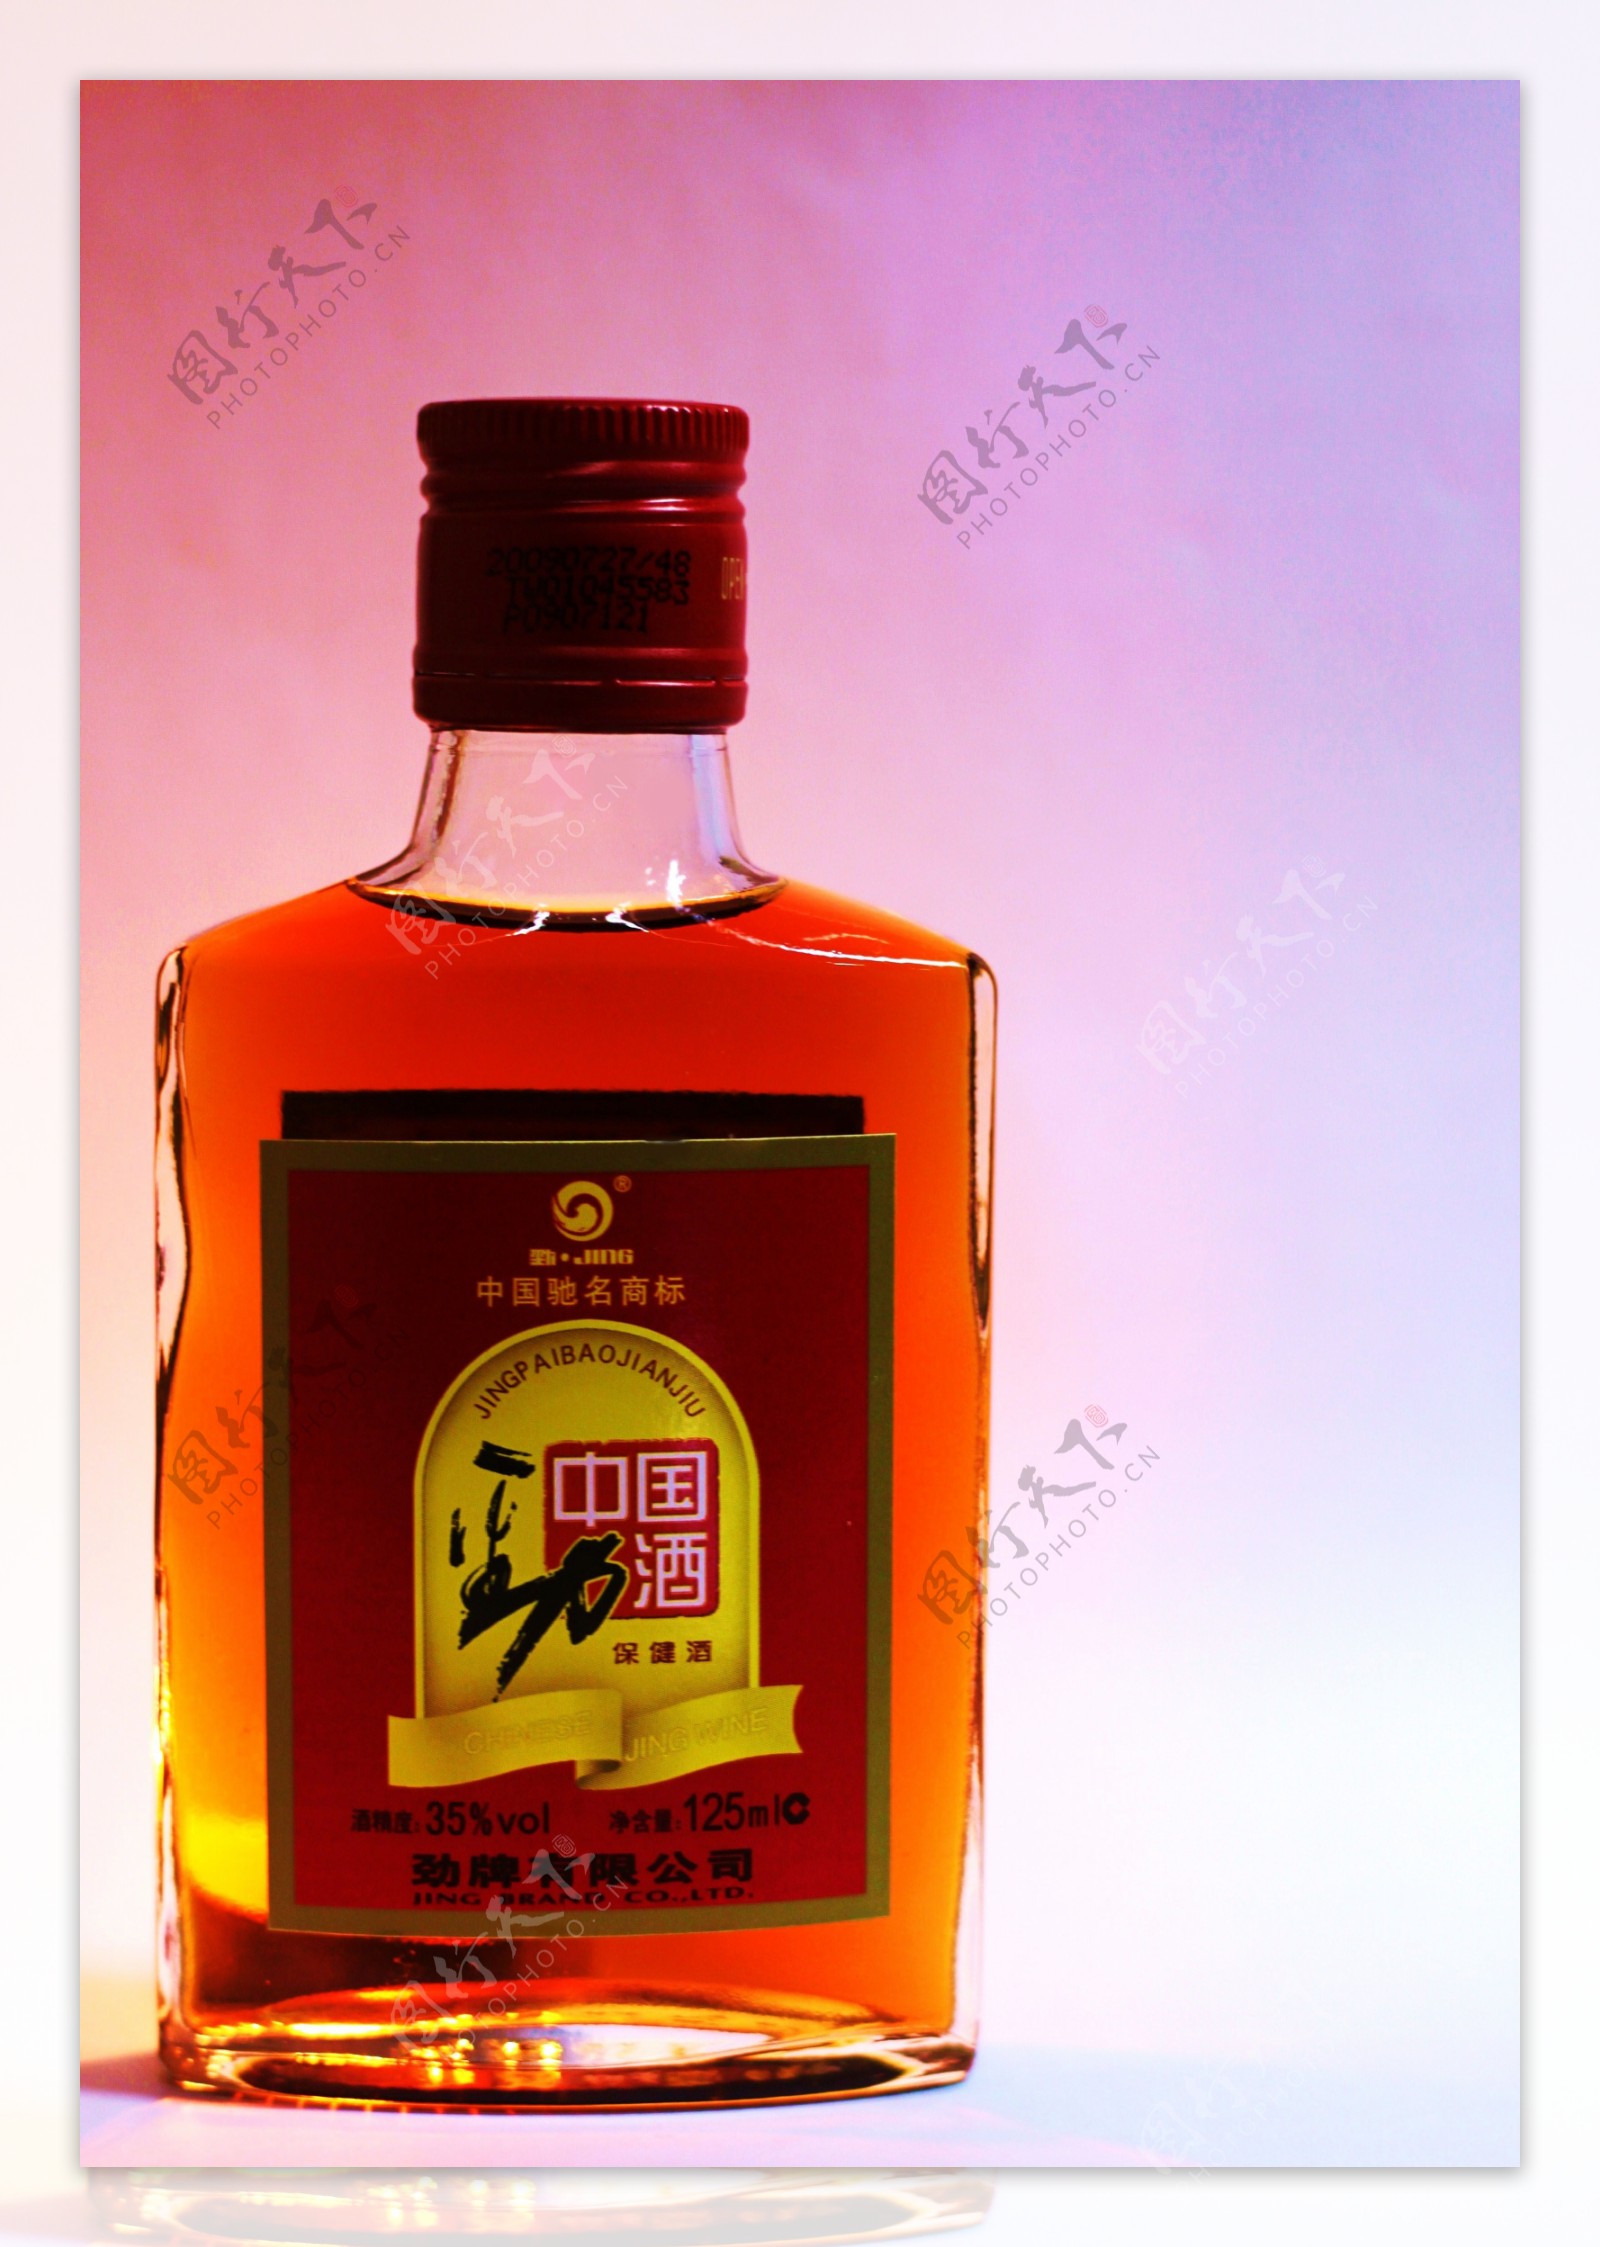 中国劲酒平面广告图片